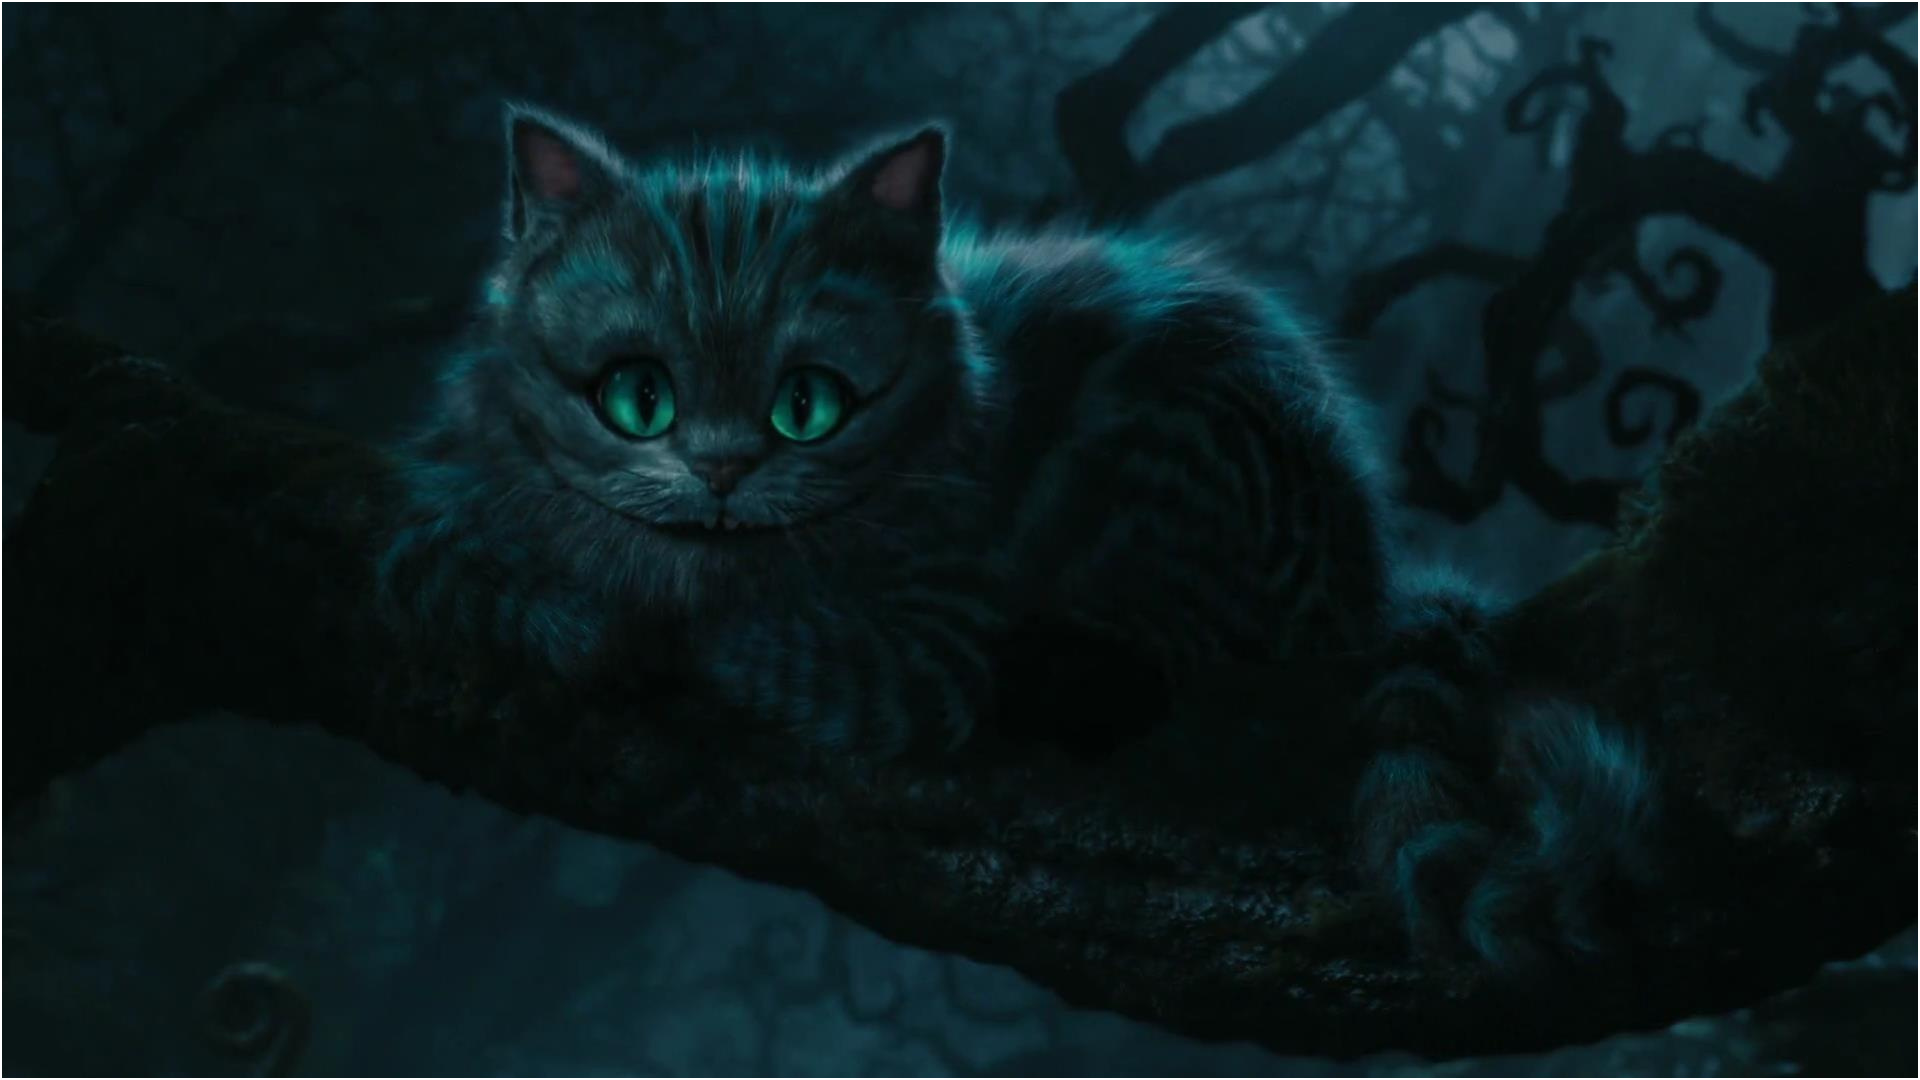 le chat du cheshire personnage dans alice au pays des merveilles film 2010